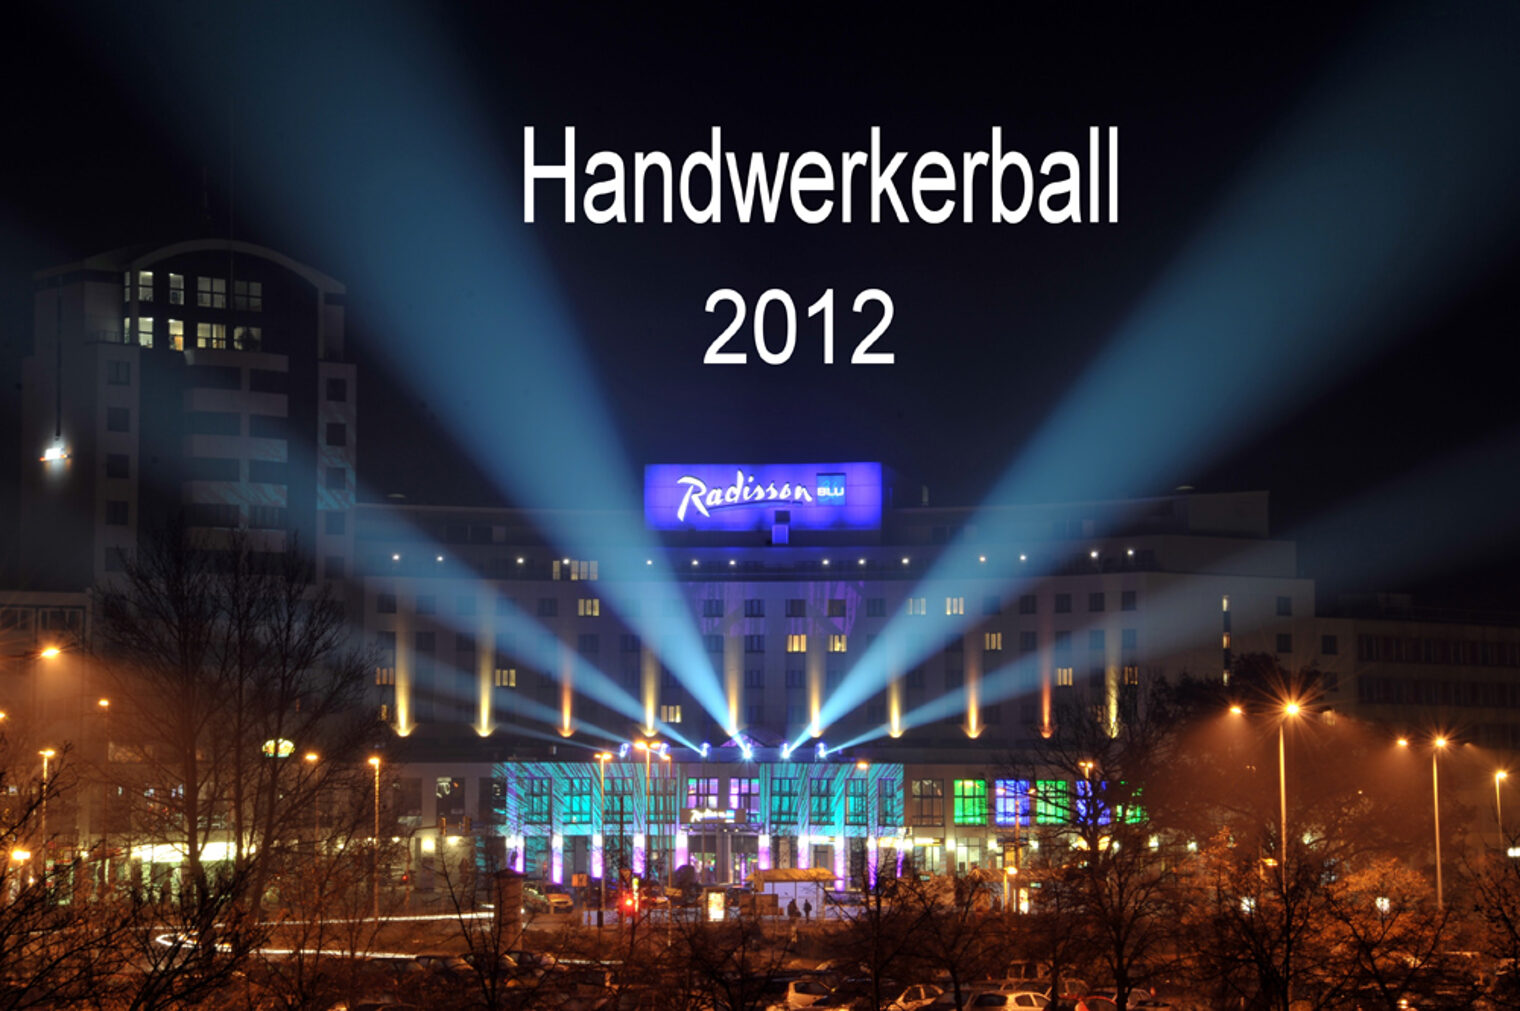 Handwerkerball 2012